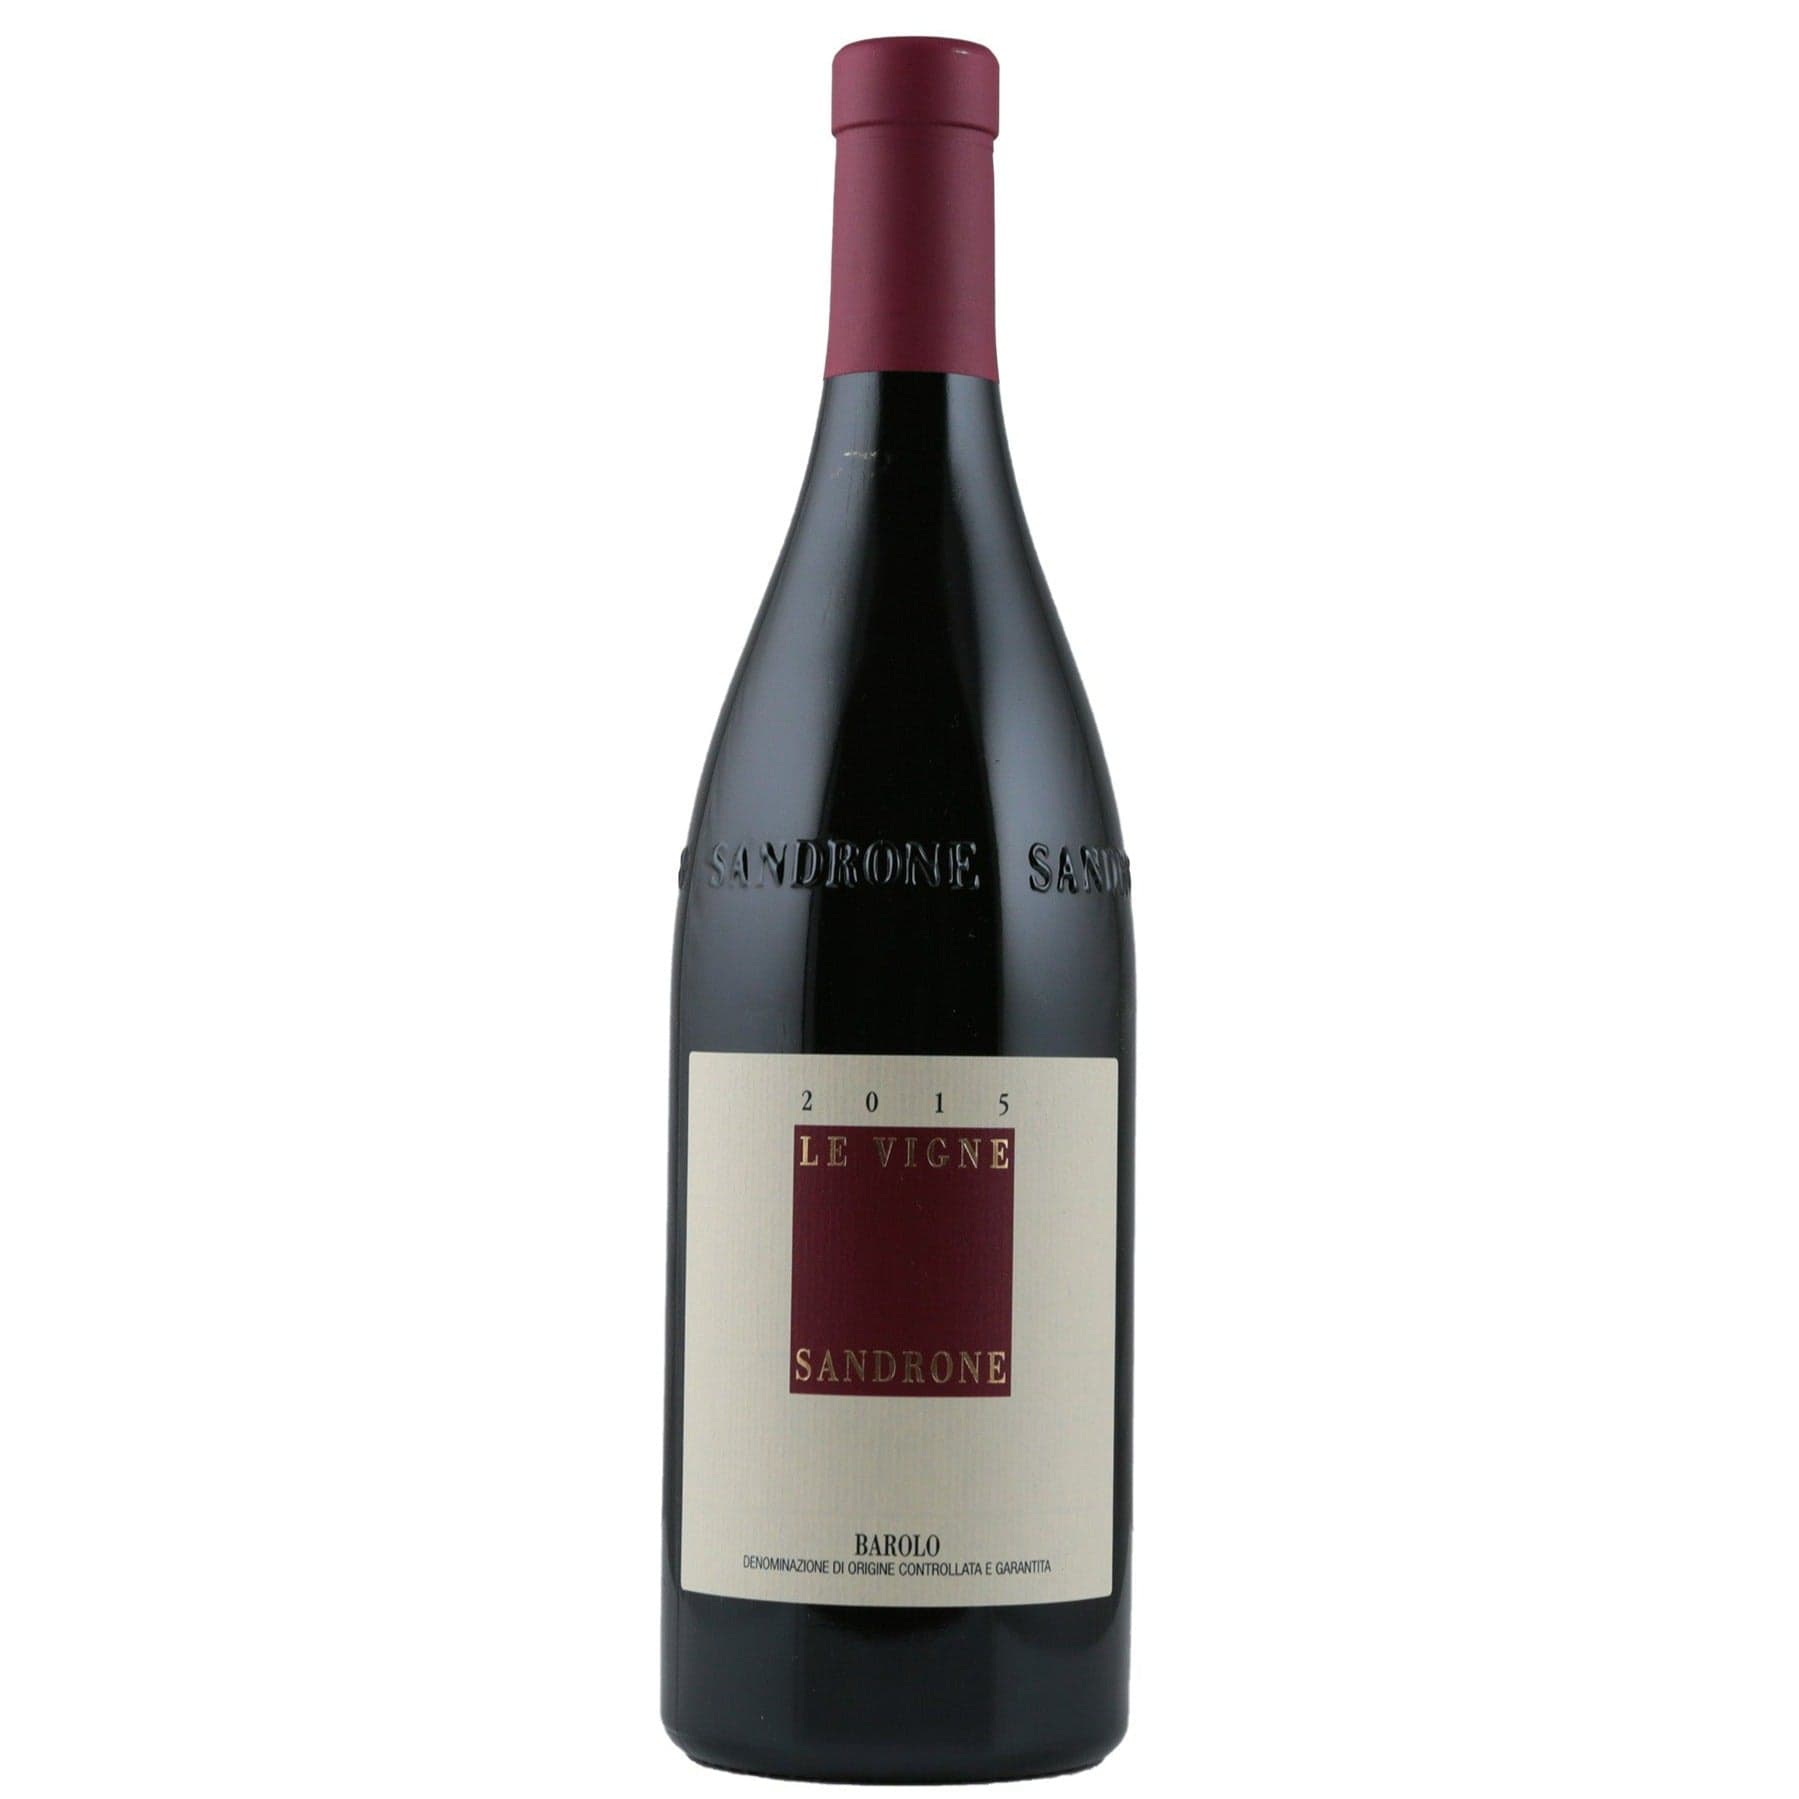 Single bottle of Red wine Luciano Sandrone, Le Vigne, Barolo, 2015 100% Nebbiolo